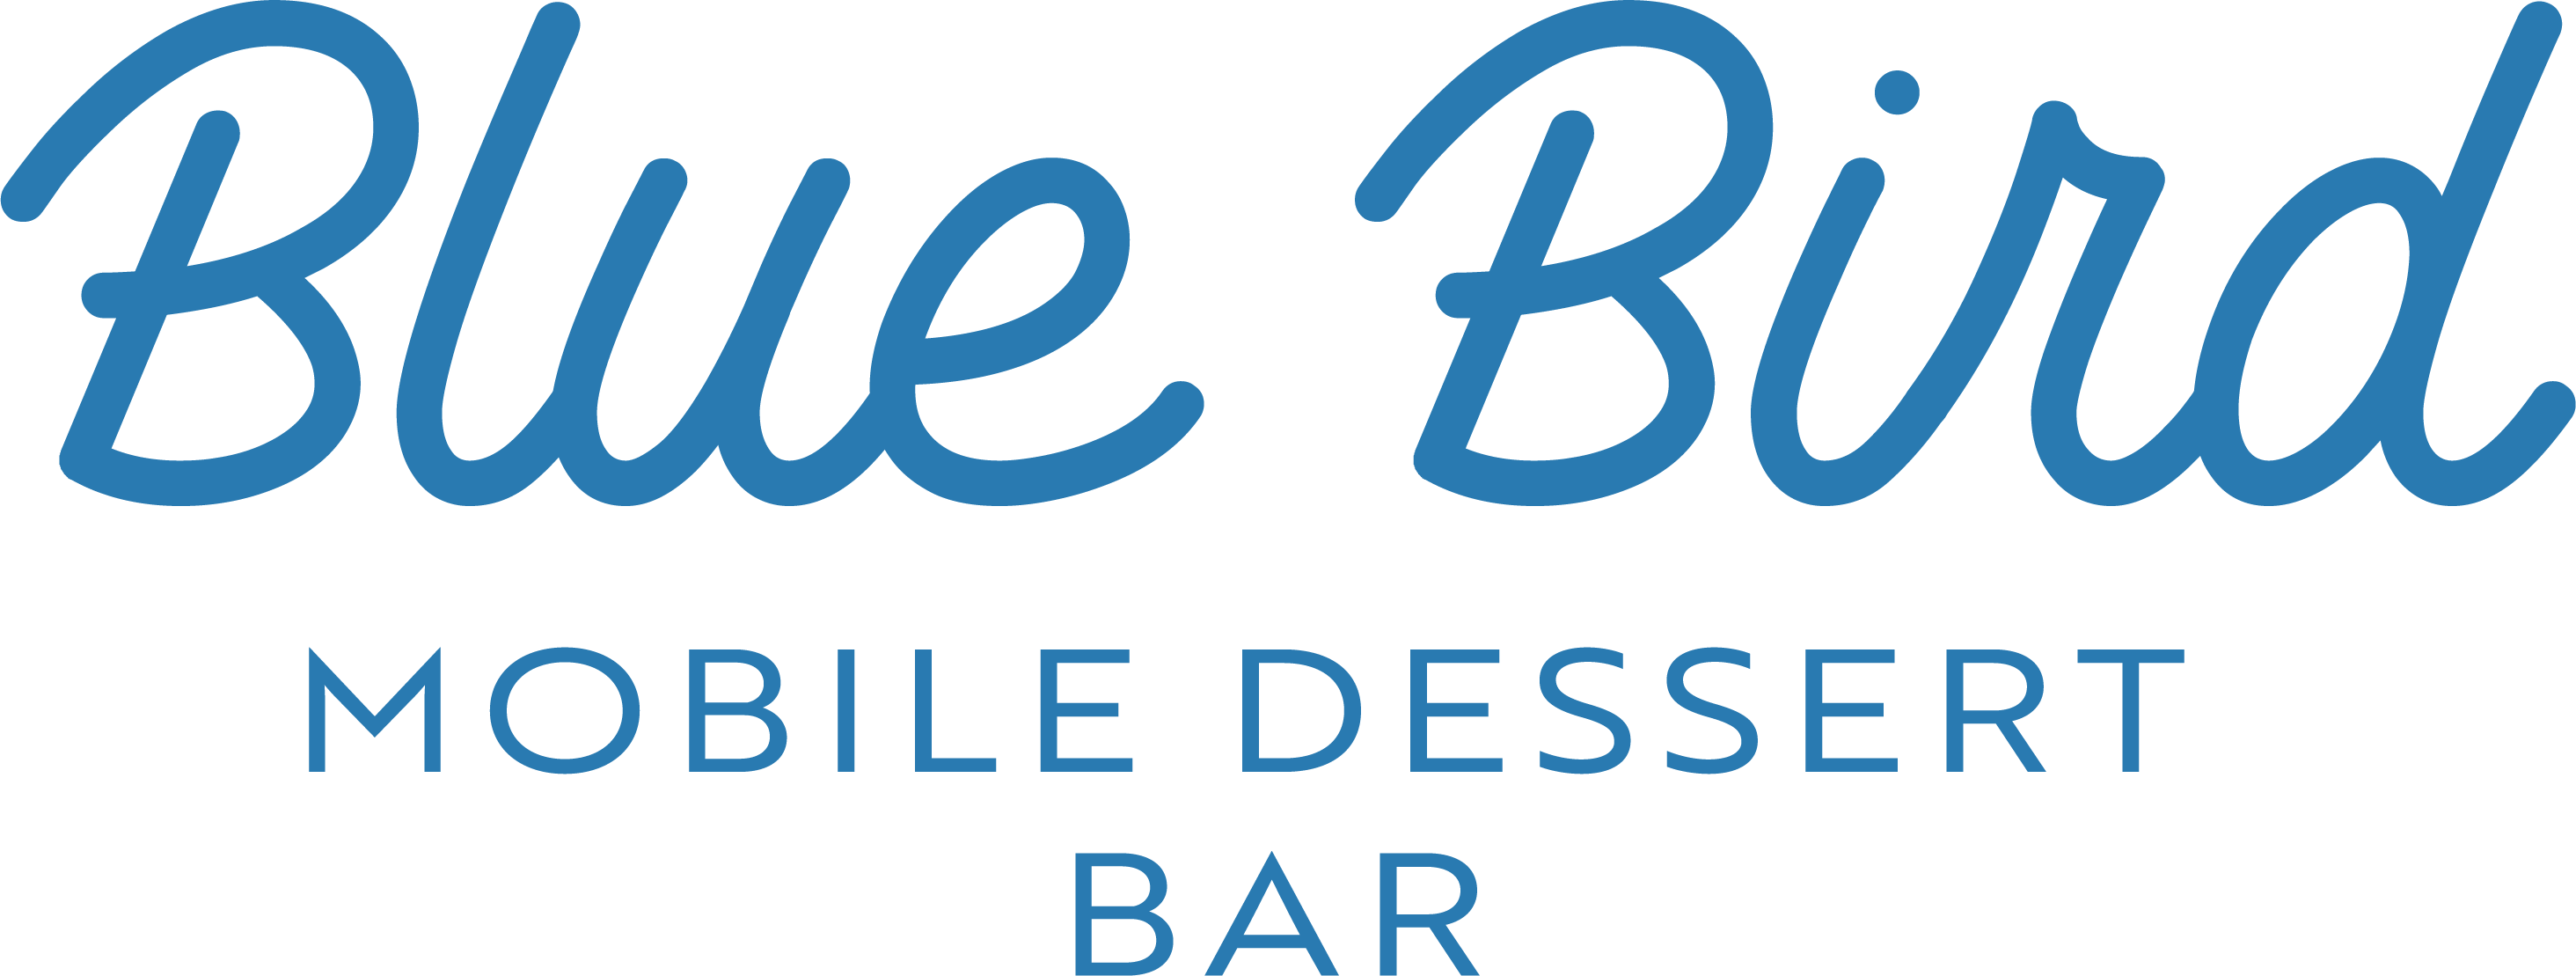 Blue Bird Mobile Dessert Bar